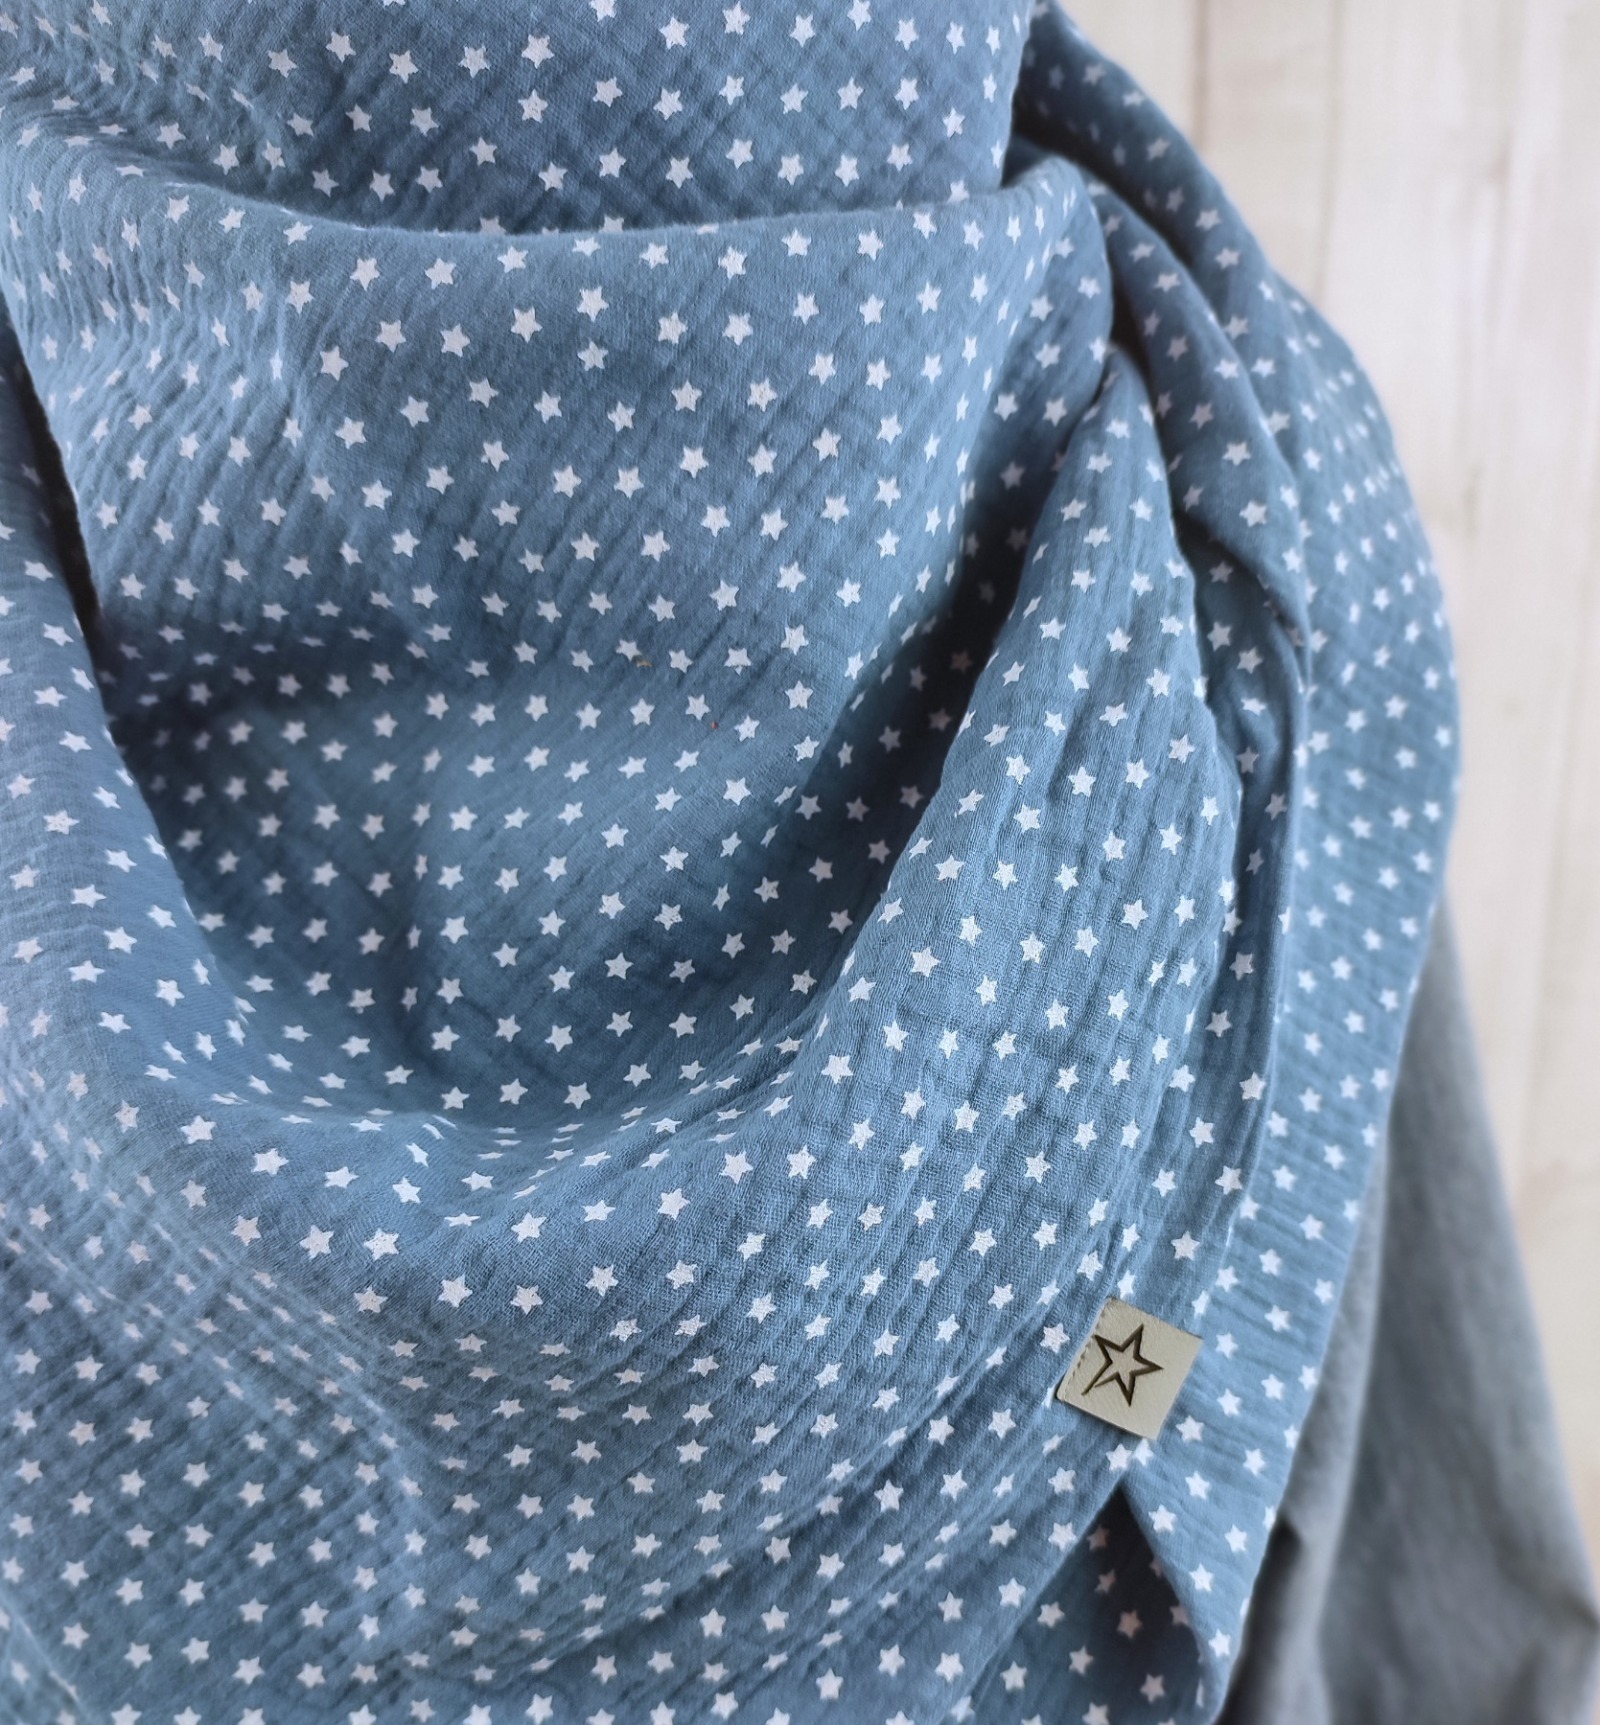 Tuch Dreieckstuch Musselin Damen jeansblau mit kleinen weißen Sternen XXL Tuch aus Baumwolle Mamatu